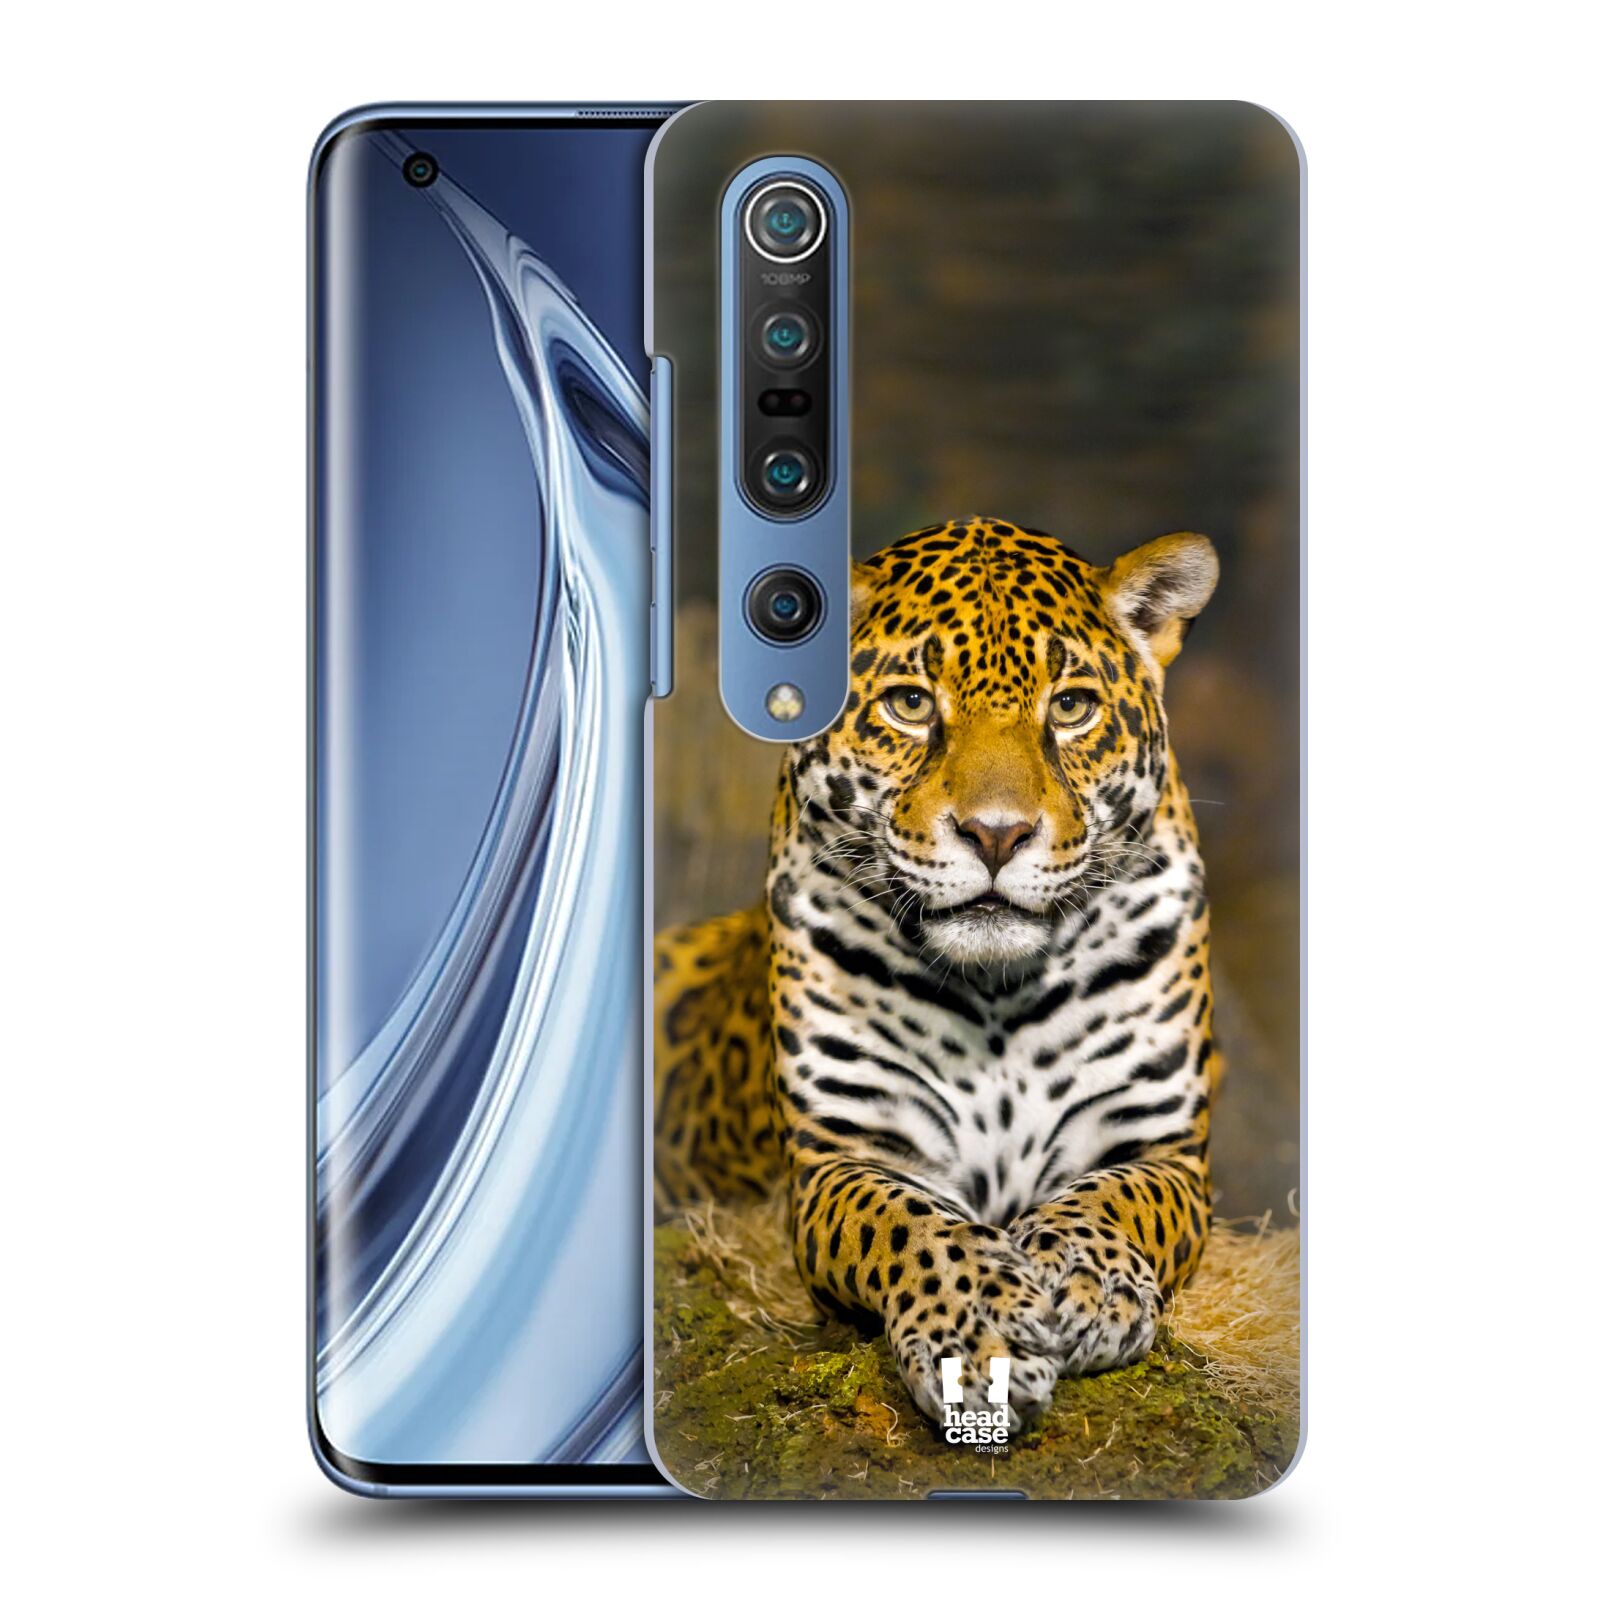 HEAD CASE plastový obal na mobil Xiaomi Mi 10 vzor slavná zvířata foto jaguár